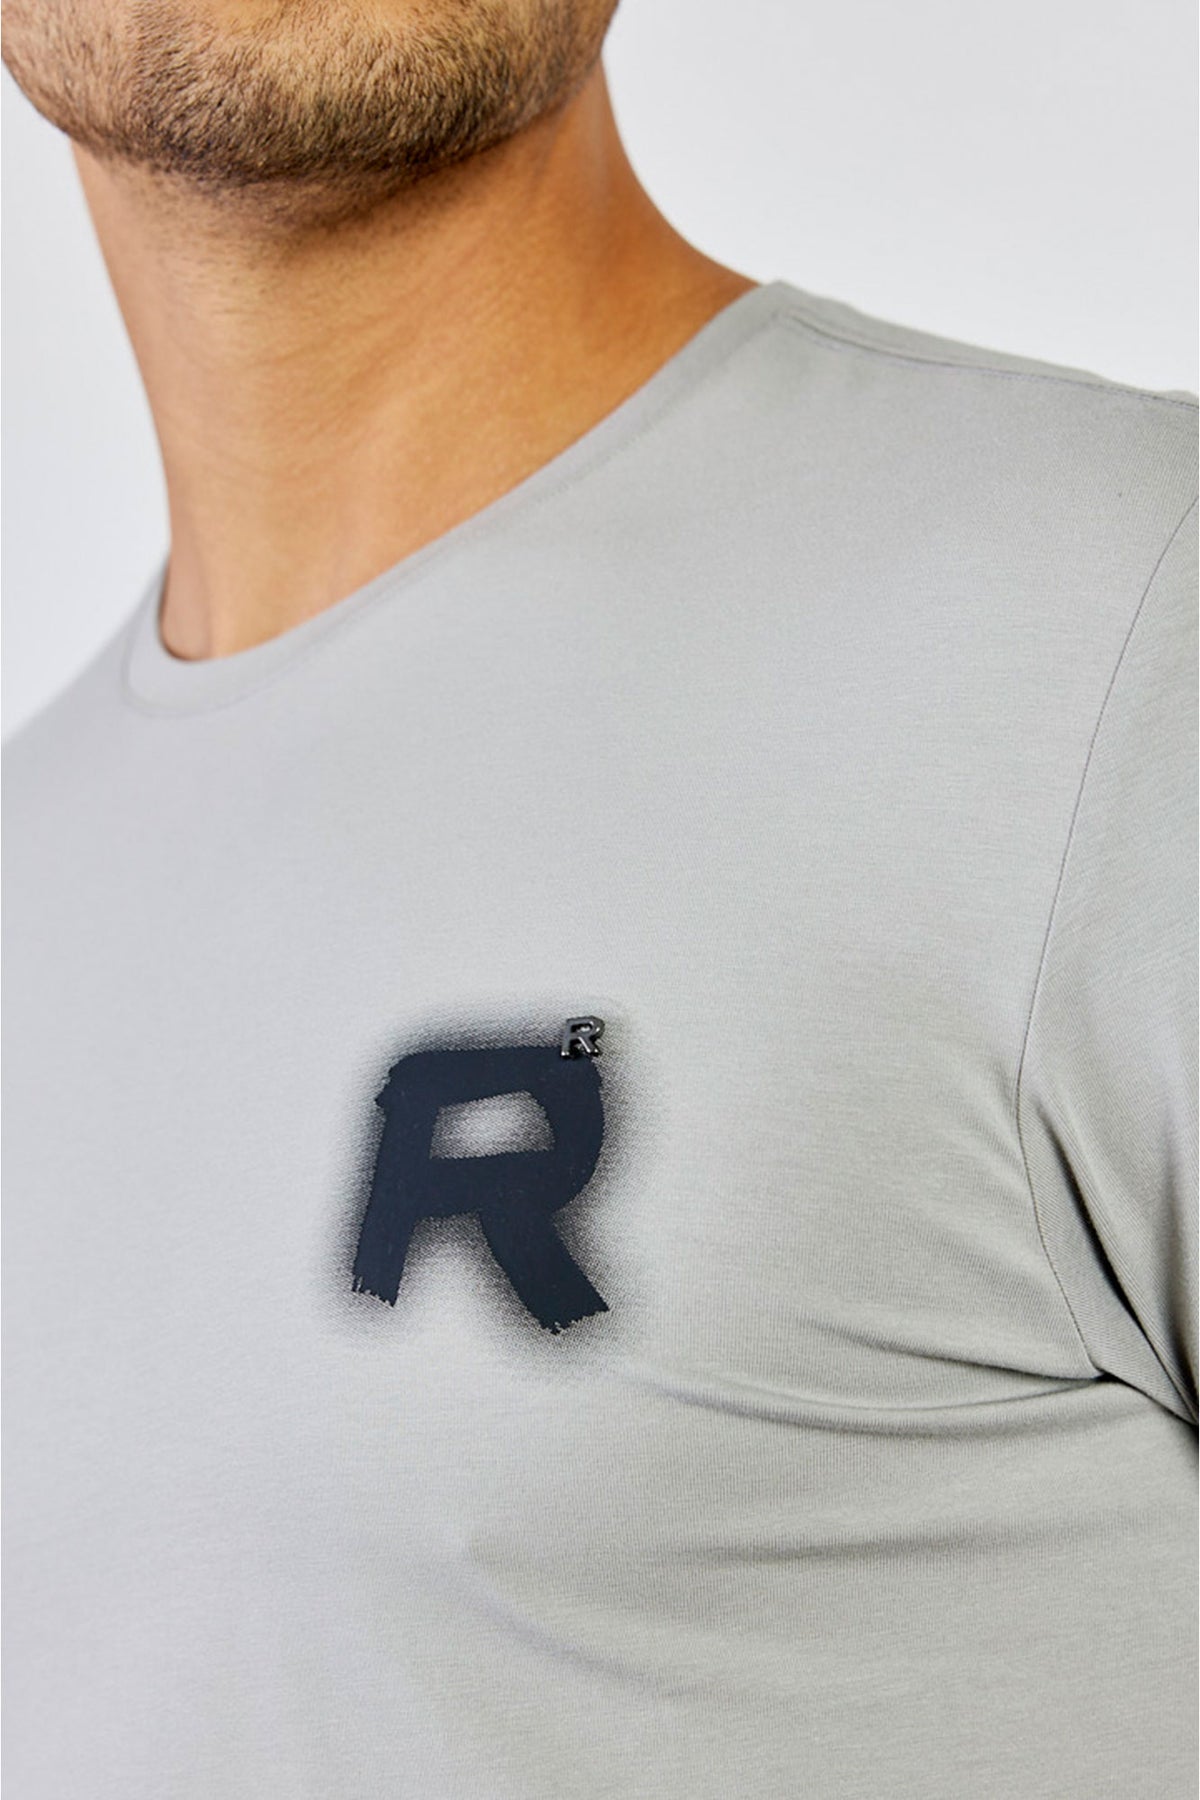 ריפליי חולצת טי שירט קצרה Fade בצבע אפור כהה לגברים-Replay-XS-נאקו